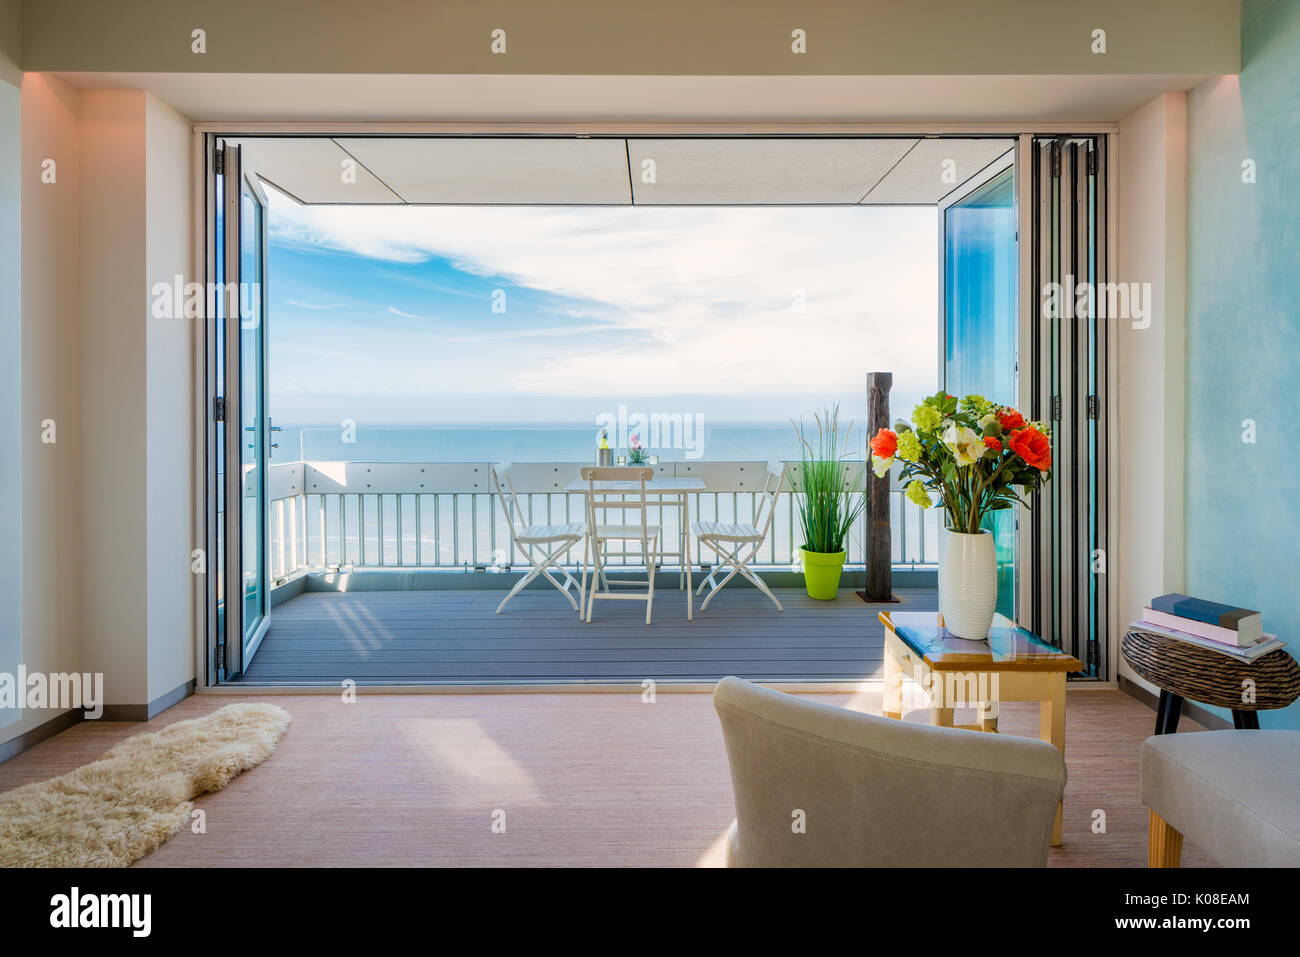 Appartement moderne avec balcon avec vue sur mer Banque D'Images